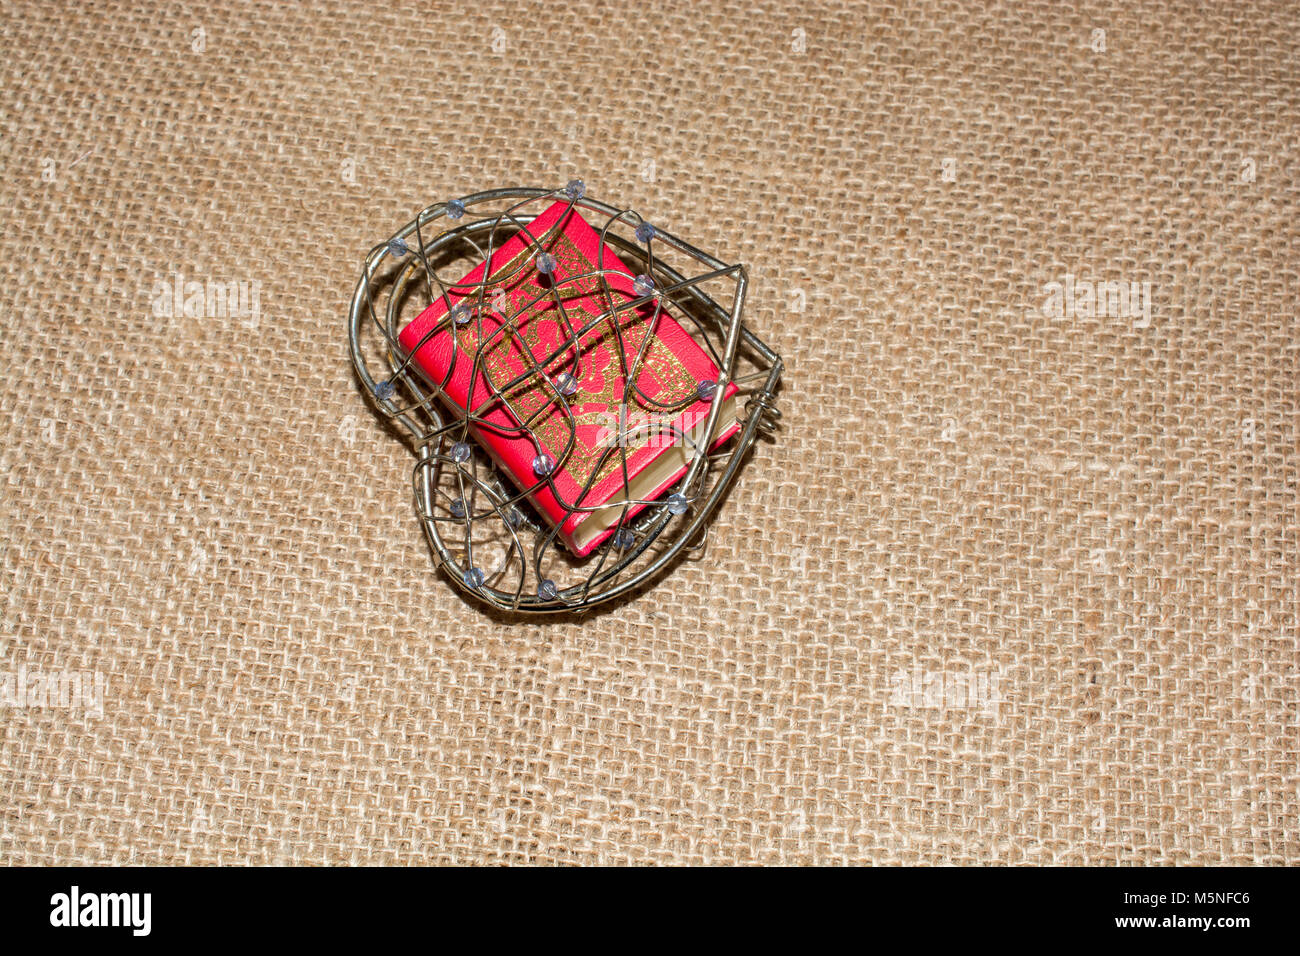 El Sagrado Corán en tamaño mini en una jaula en forma de corazón Foto de stock